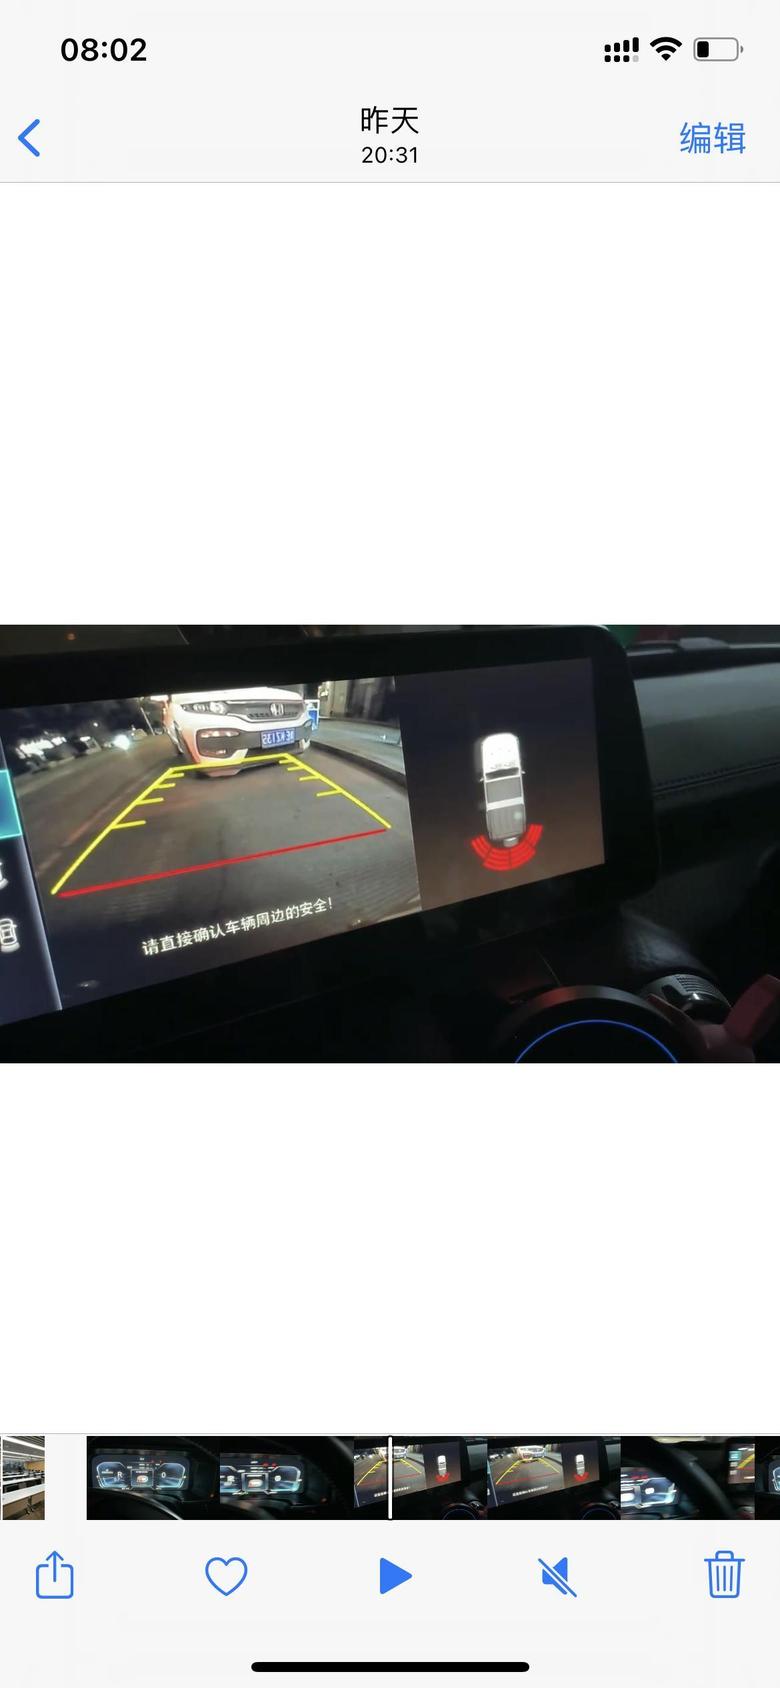 北京bj401200多公里出现了第一个小毛病正常开出现泊车辅助故障但是不影响正常倒车行进就是一直滴滴雷达全红